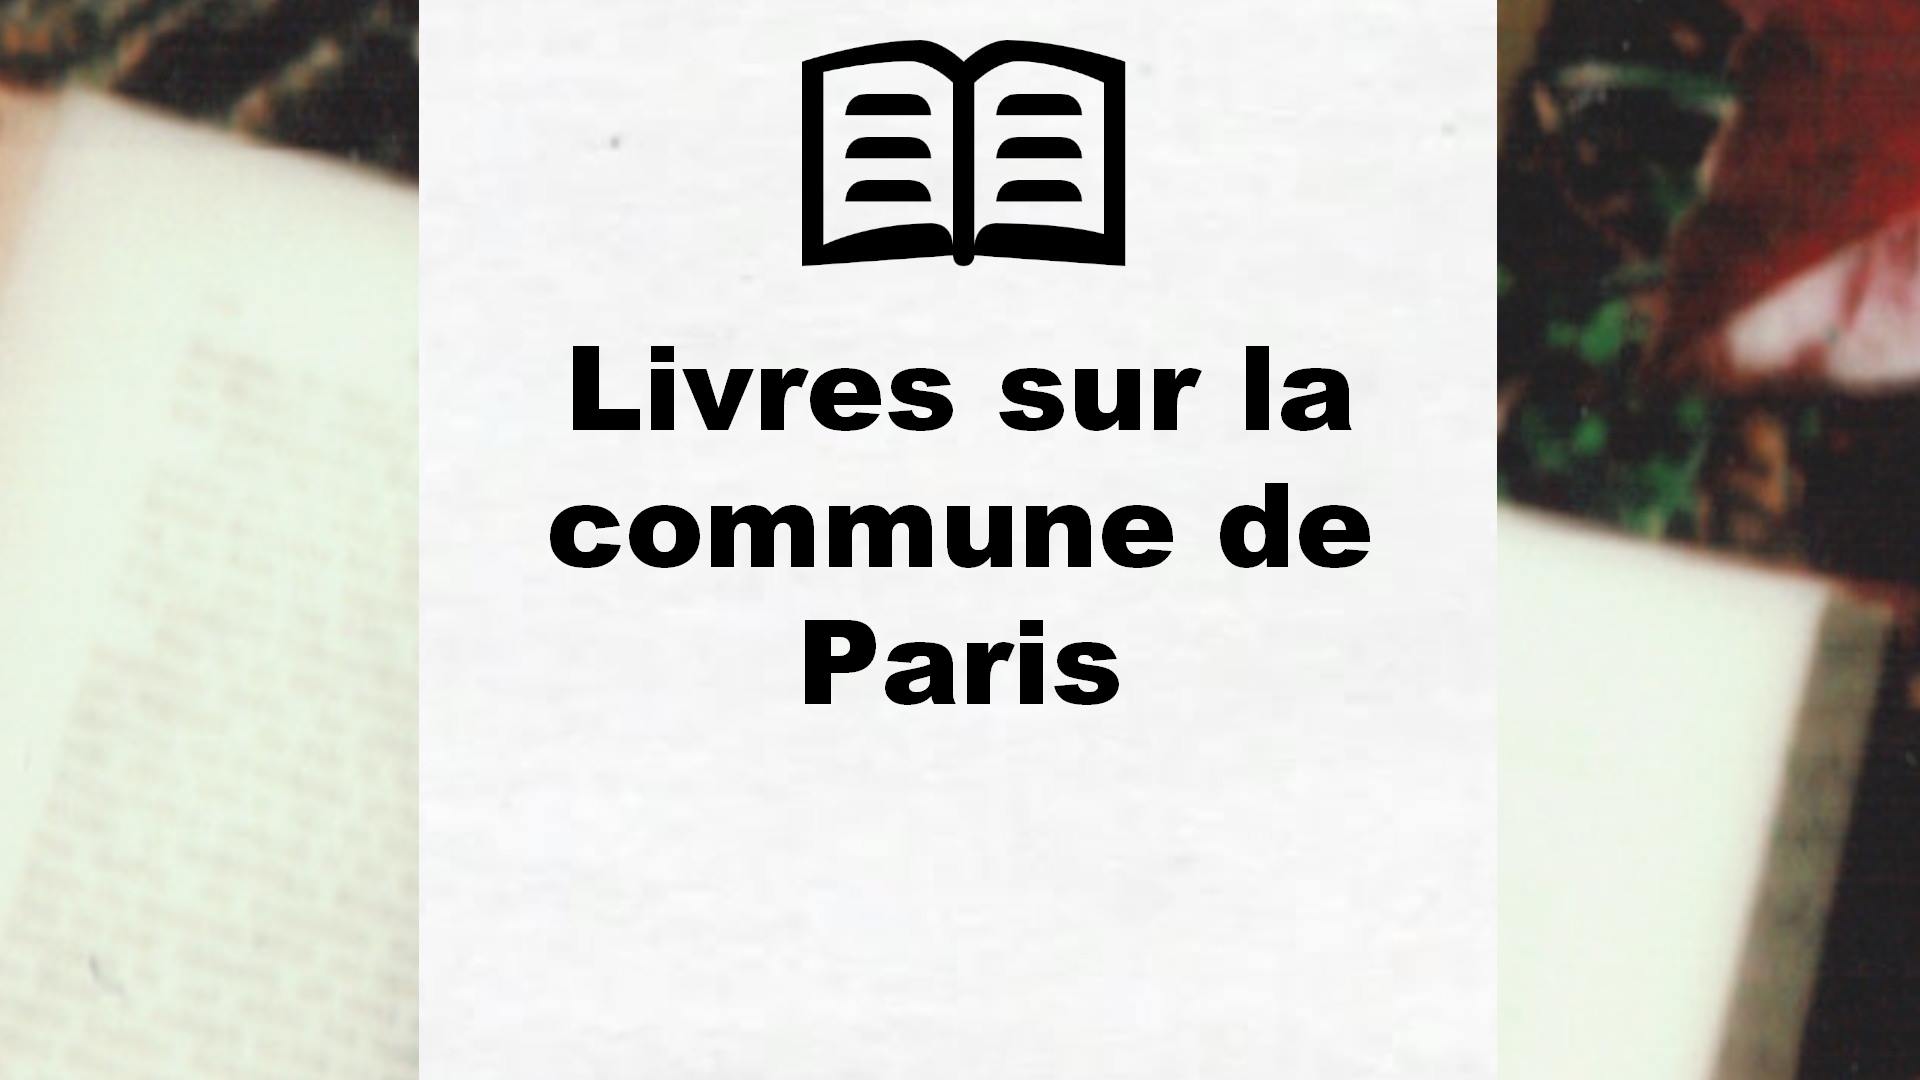 Livres sur la commune de Paris